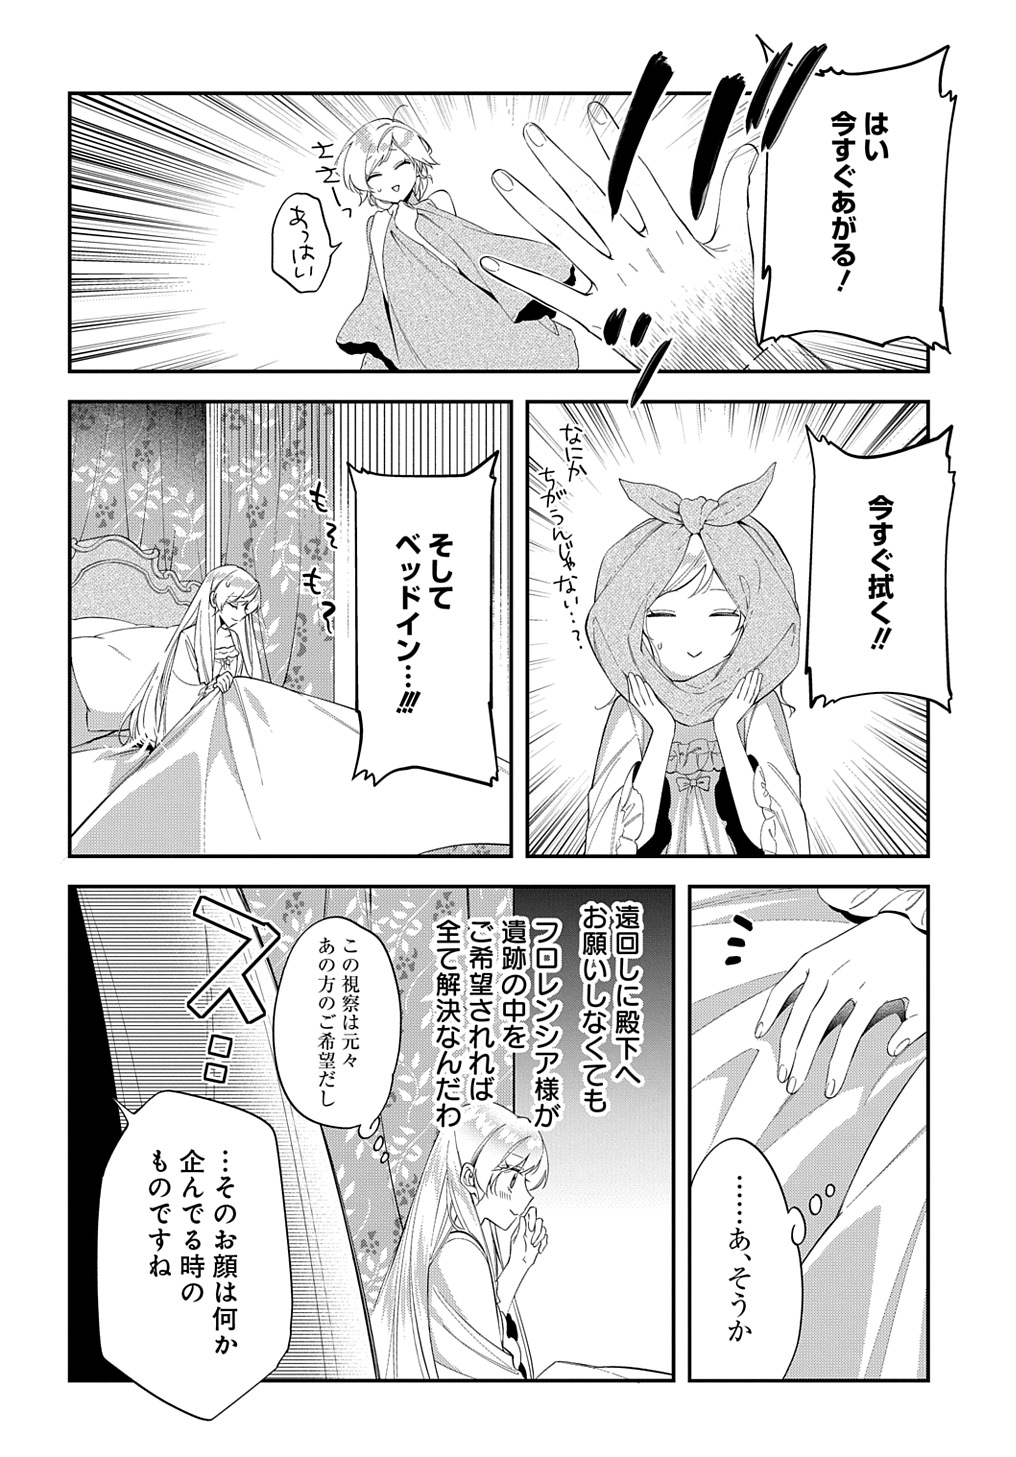 Outaishi ni Konyaku Hakisareta no de, Mou Baka no Furi wa Yameyou to Omoimasu - Chapter 23 - Page 22